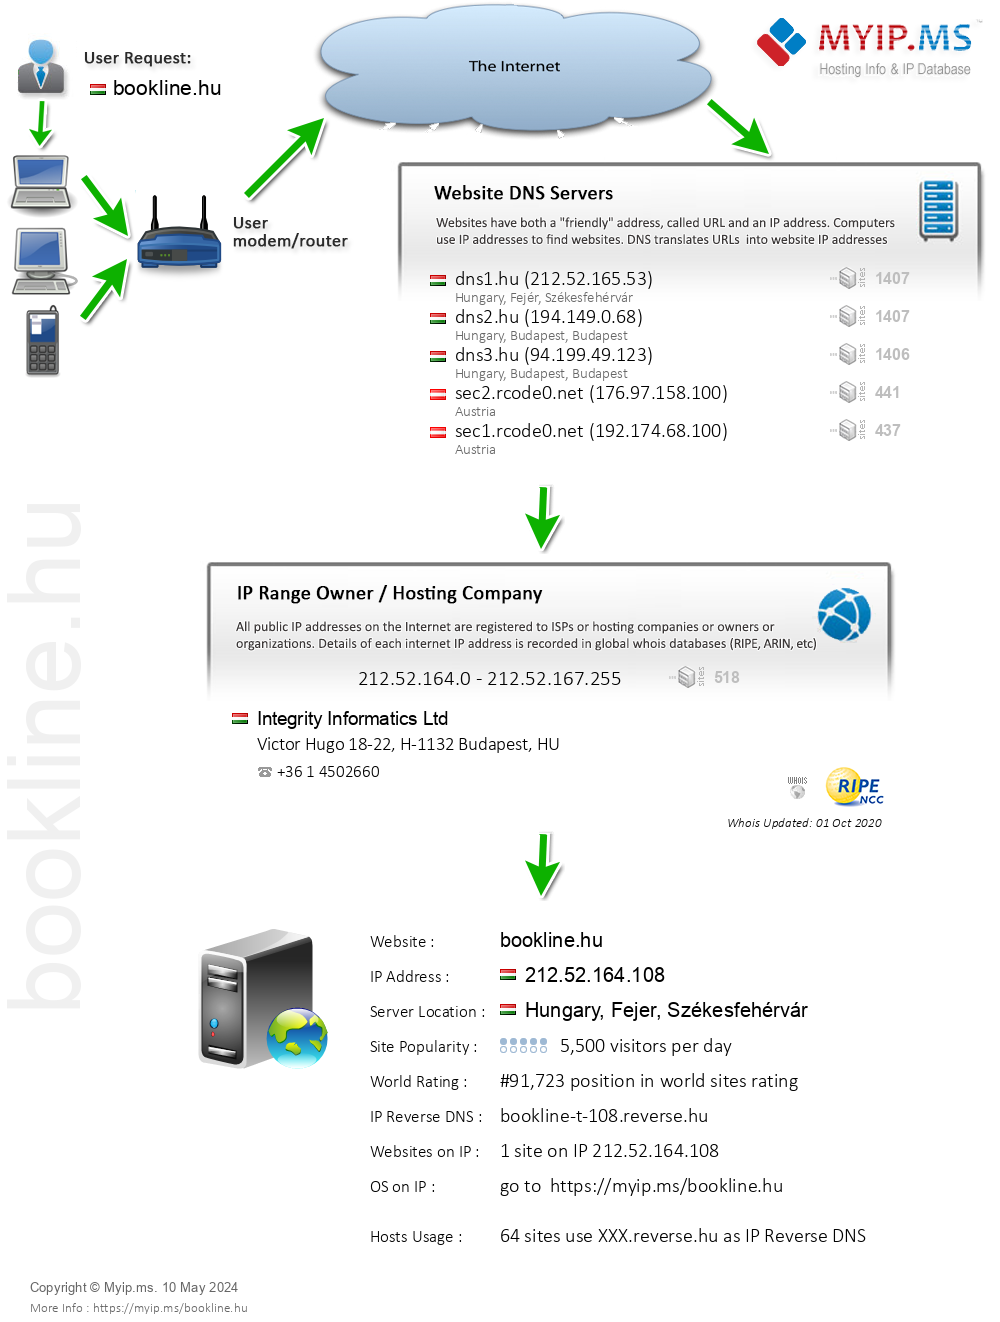 Bookline.hu - Website Hosting Visual IP Diagram